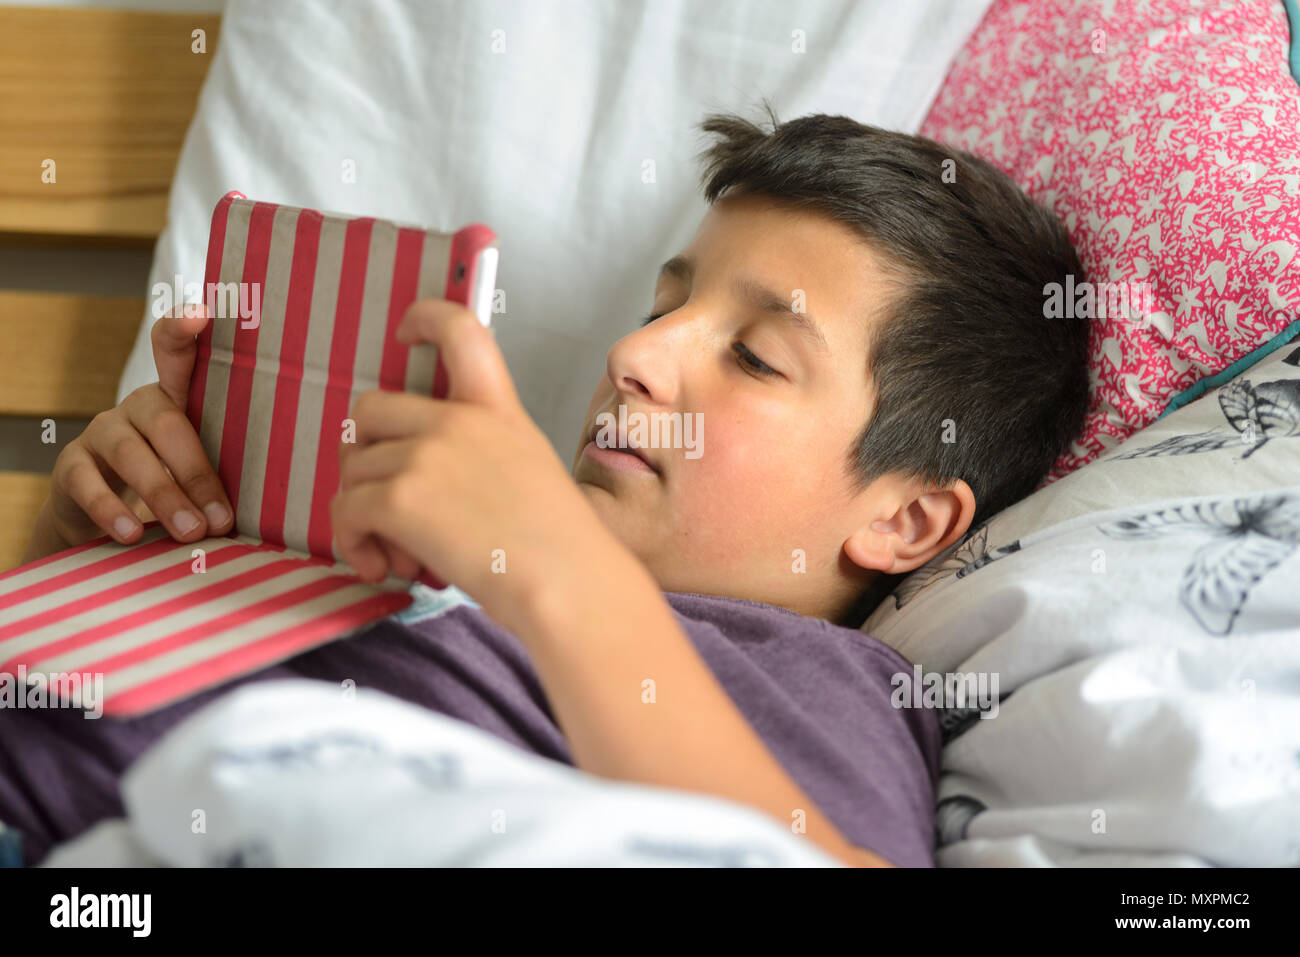 Junge, 10 Jahre alt mit einem Tablet im Bett - selektive Fokus Stockfoto